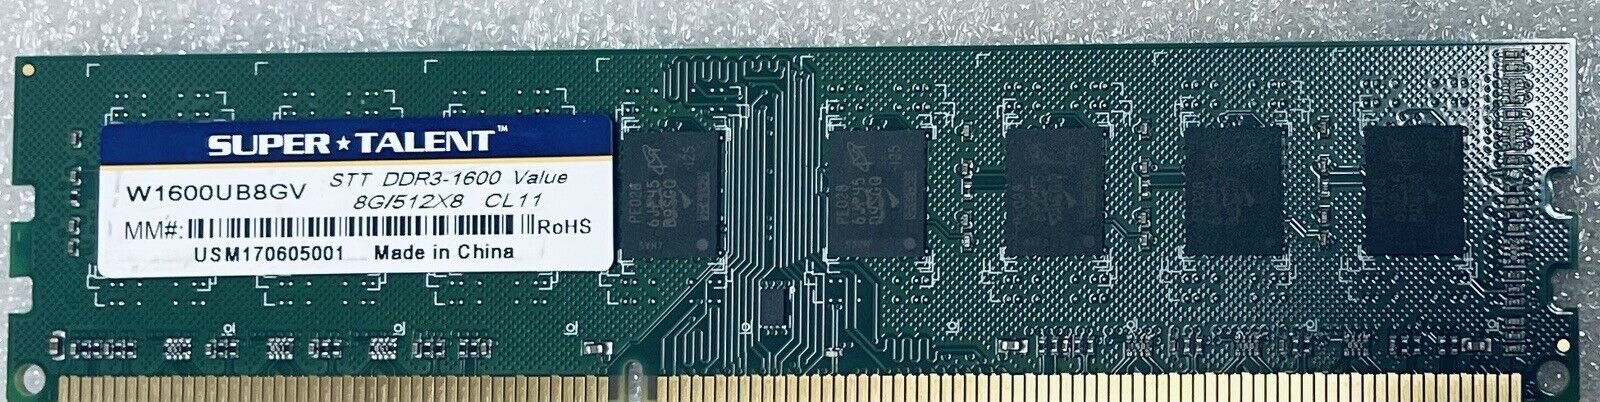 Super Talent 8GB DDR3-1600 W1600UB8GV Desktop RAM